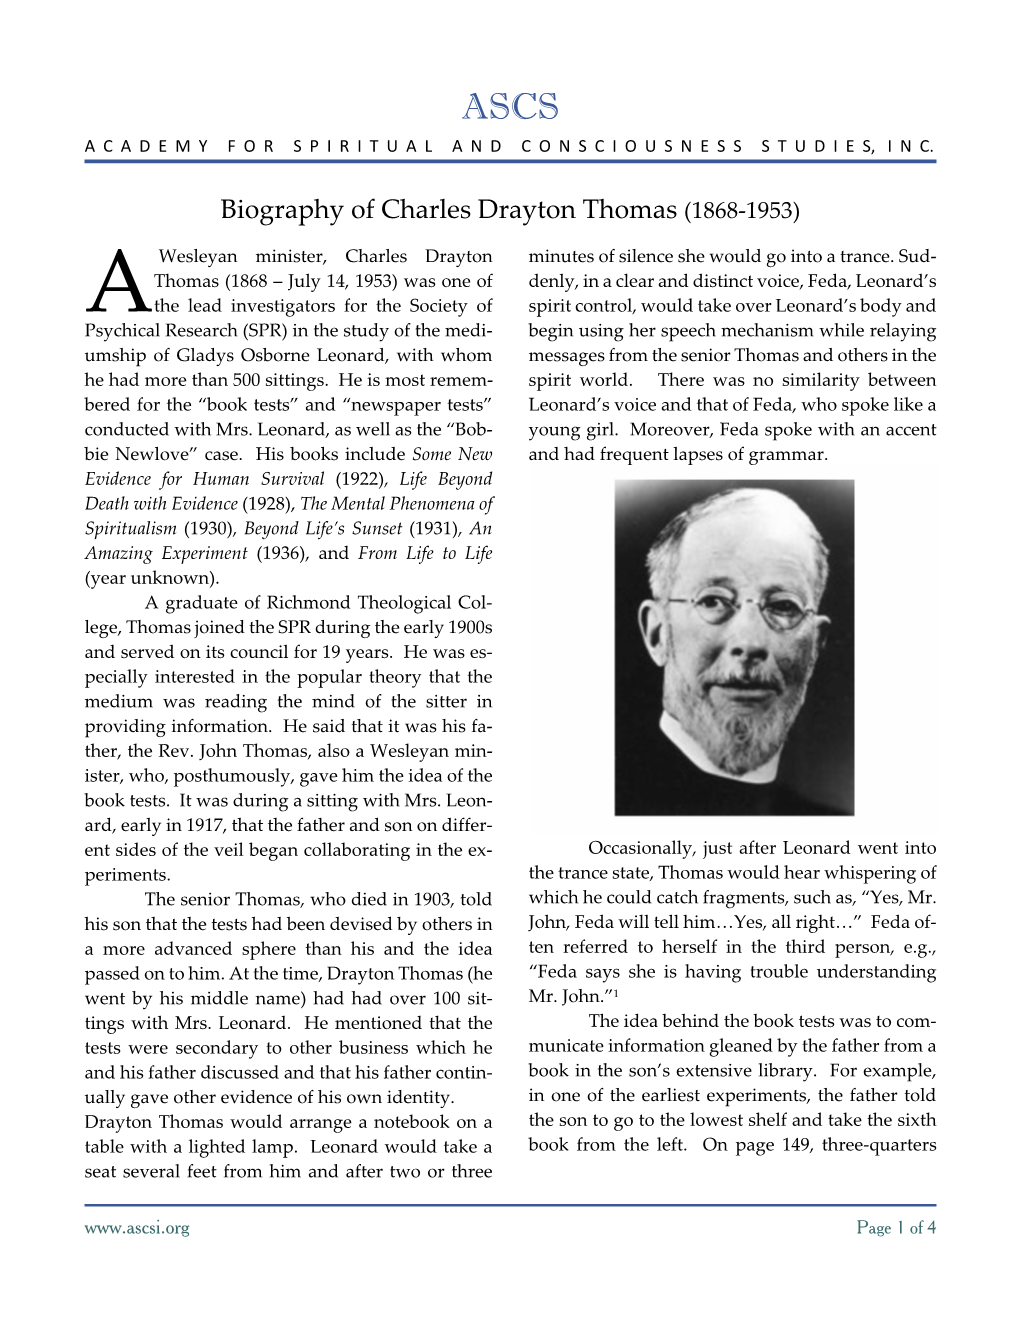 Biography of Charles Drayton Thomas (1868-1953)